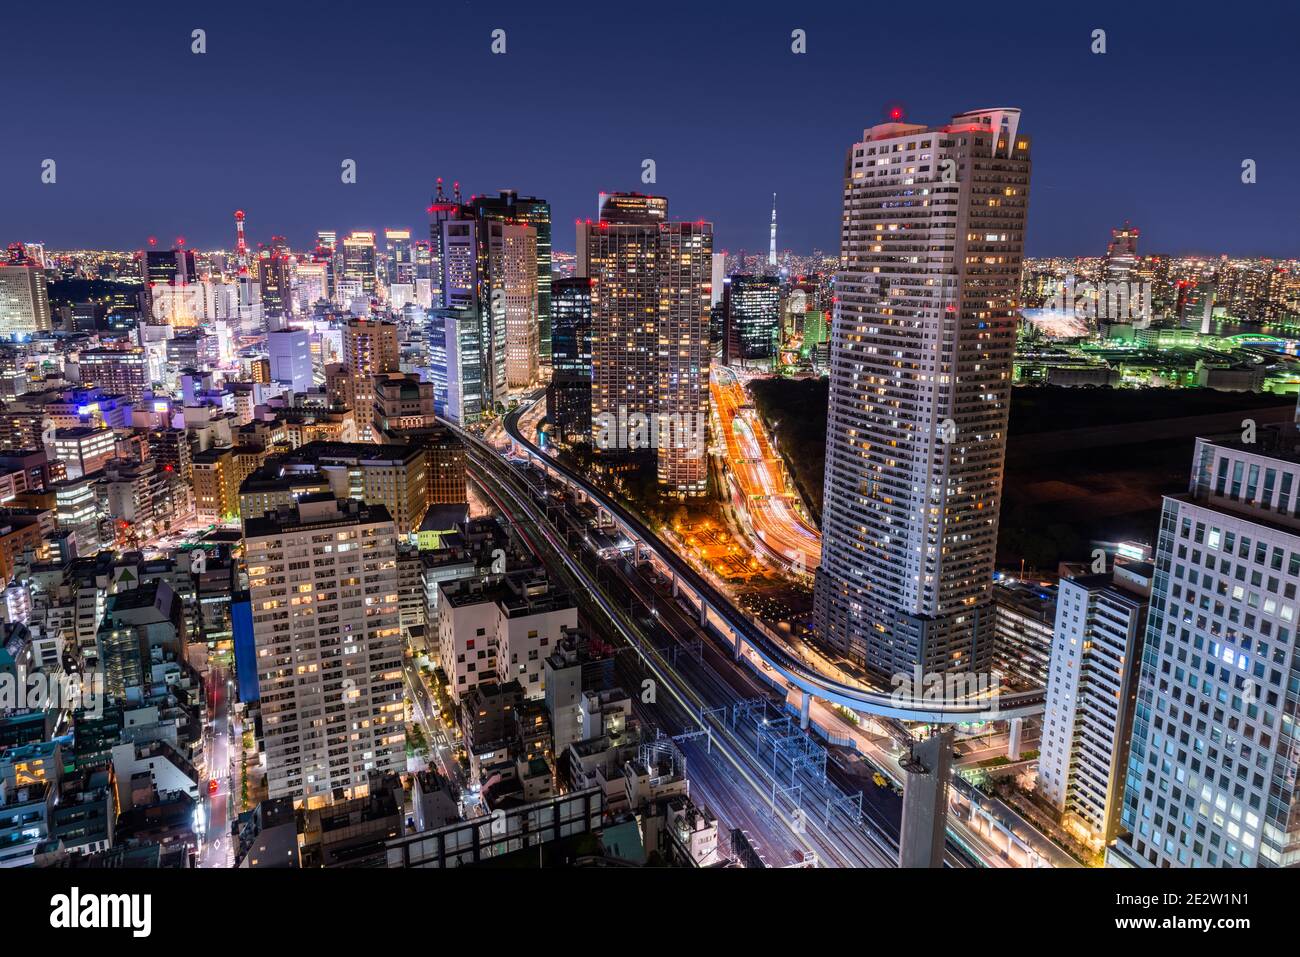 Tokyo, Japan dense urban cityscape overlooking Minato Ward at night. Stock Photo